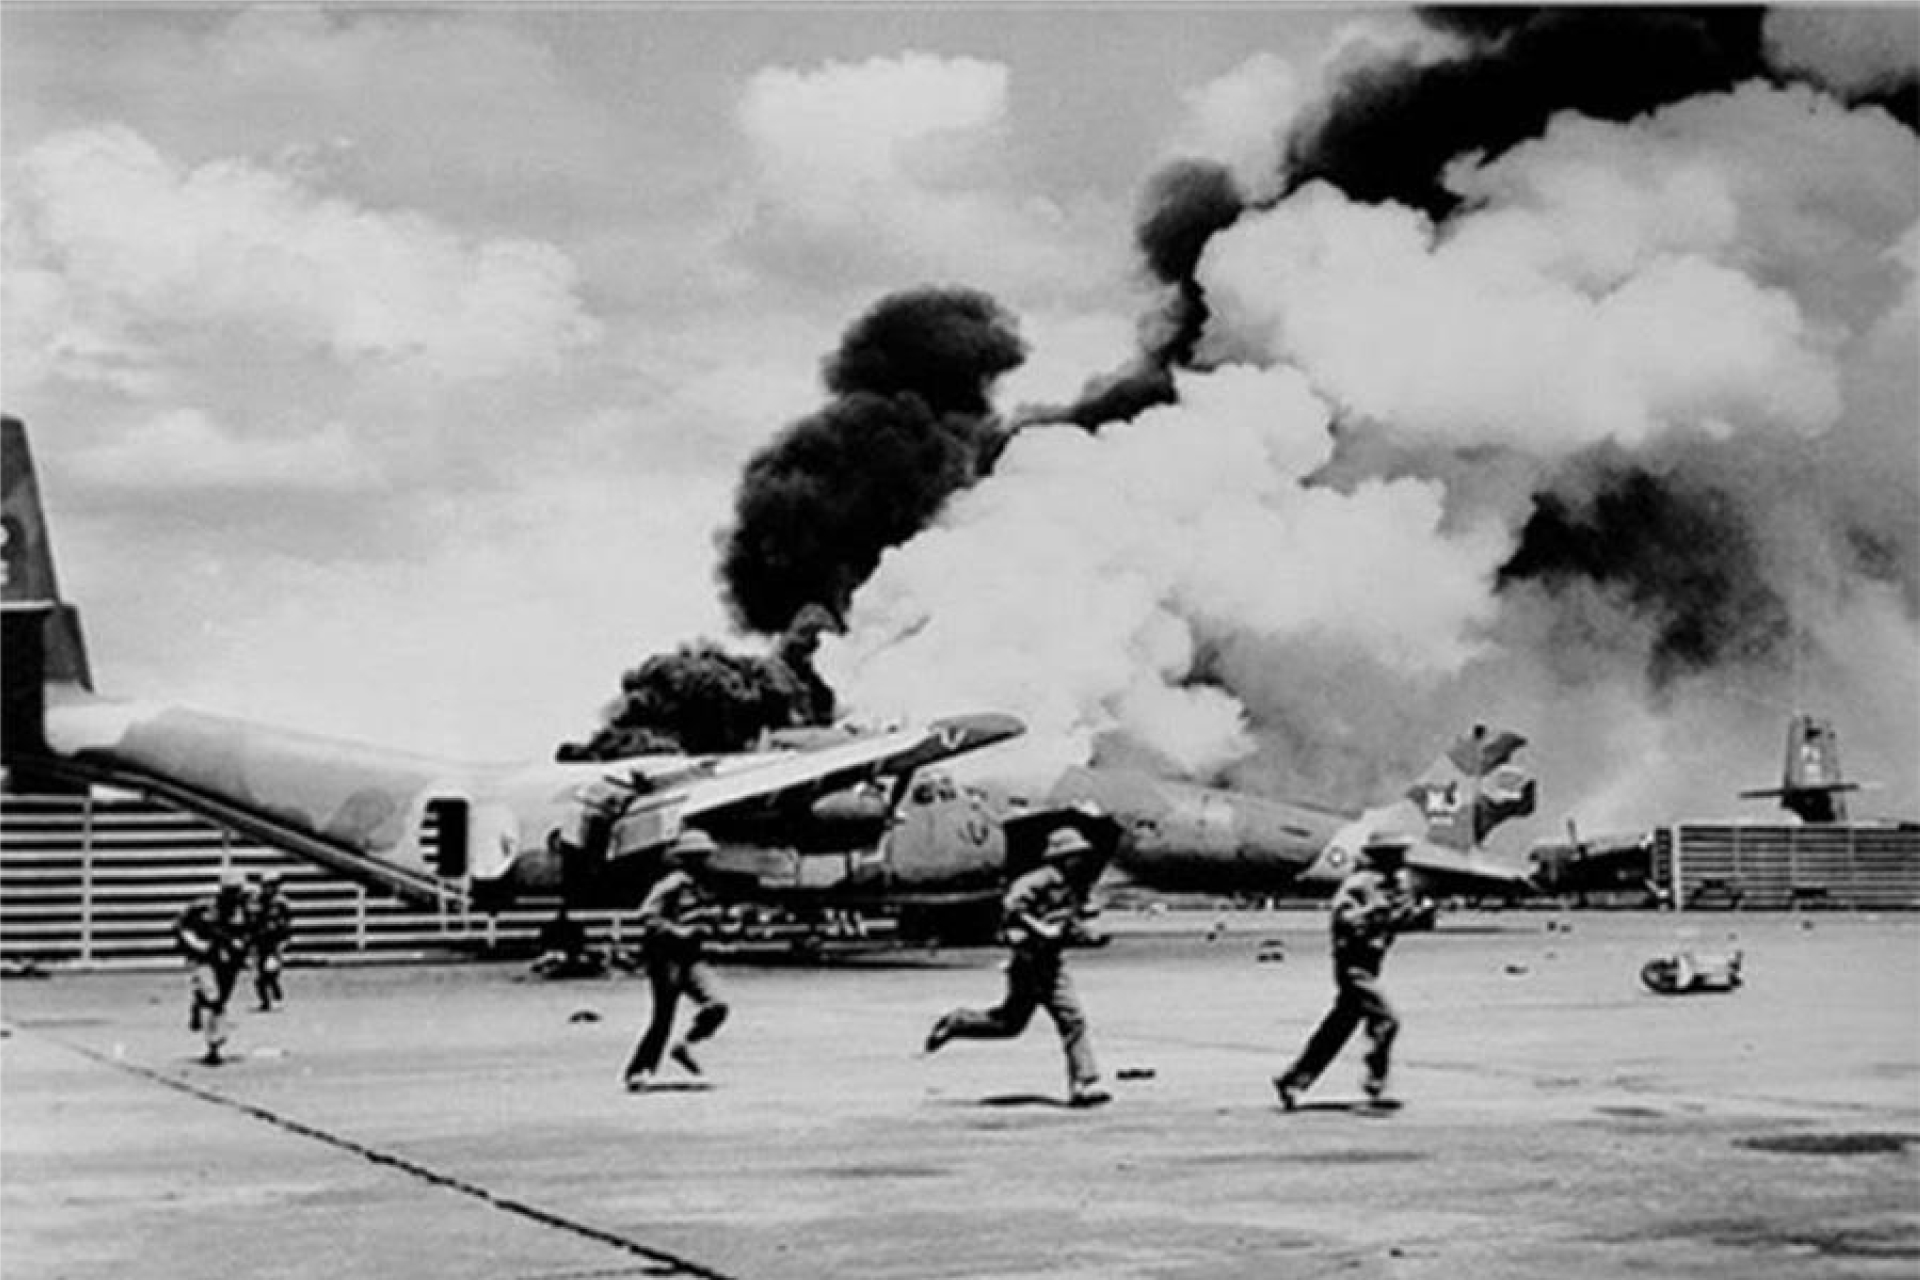 Chiến dịch Hồ Chí Minh lịch sử- Bản hùng ca bất diệt